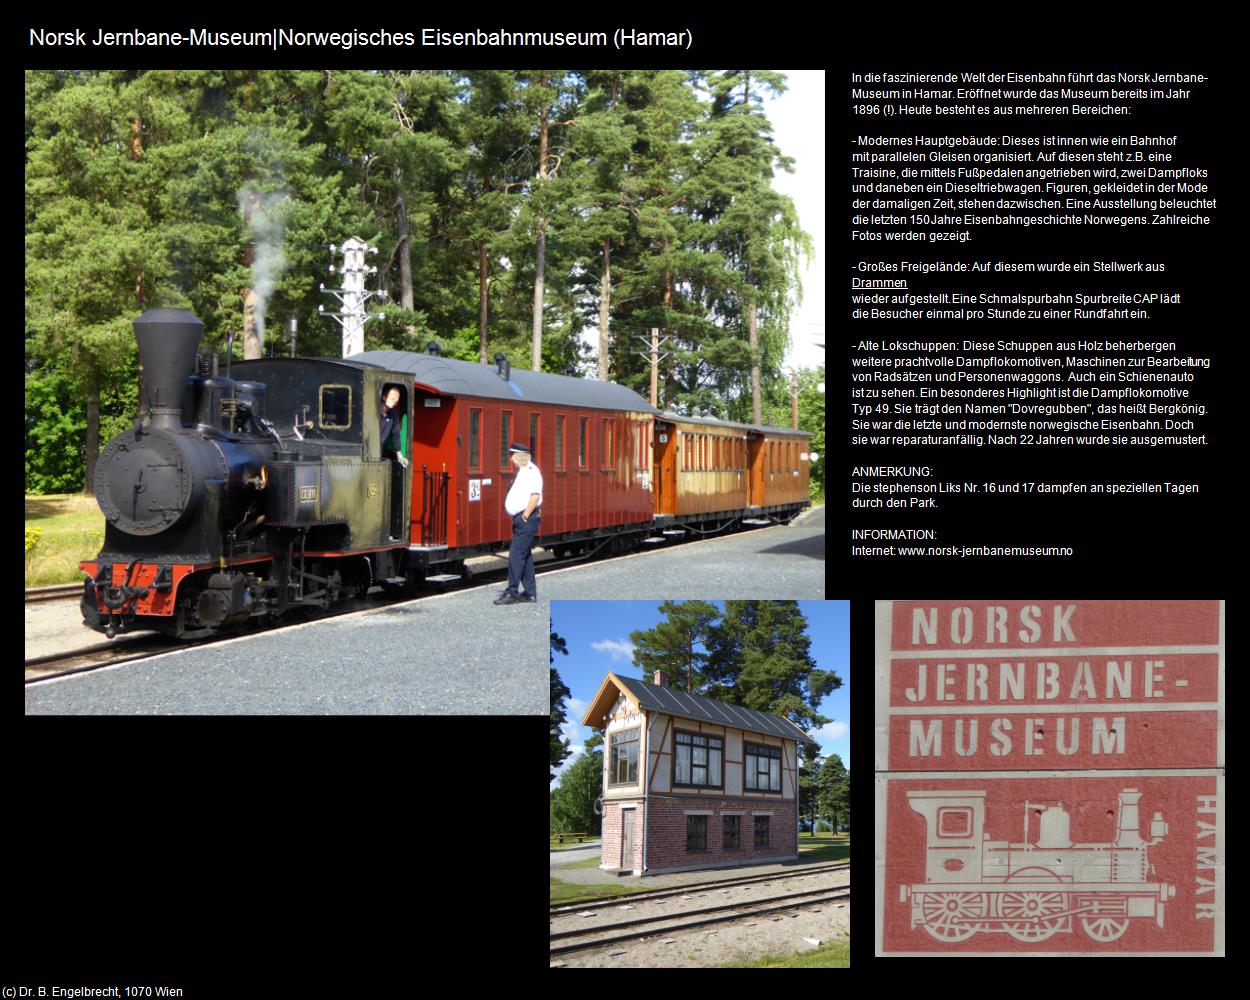 Norsk Jernbane-Museum|Norwegisches Eisenbahnmuseum (Hamar) in Kulturatlas-REISE nach NORWEGEN(c)B.Engelbrecht